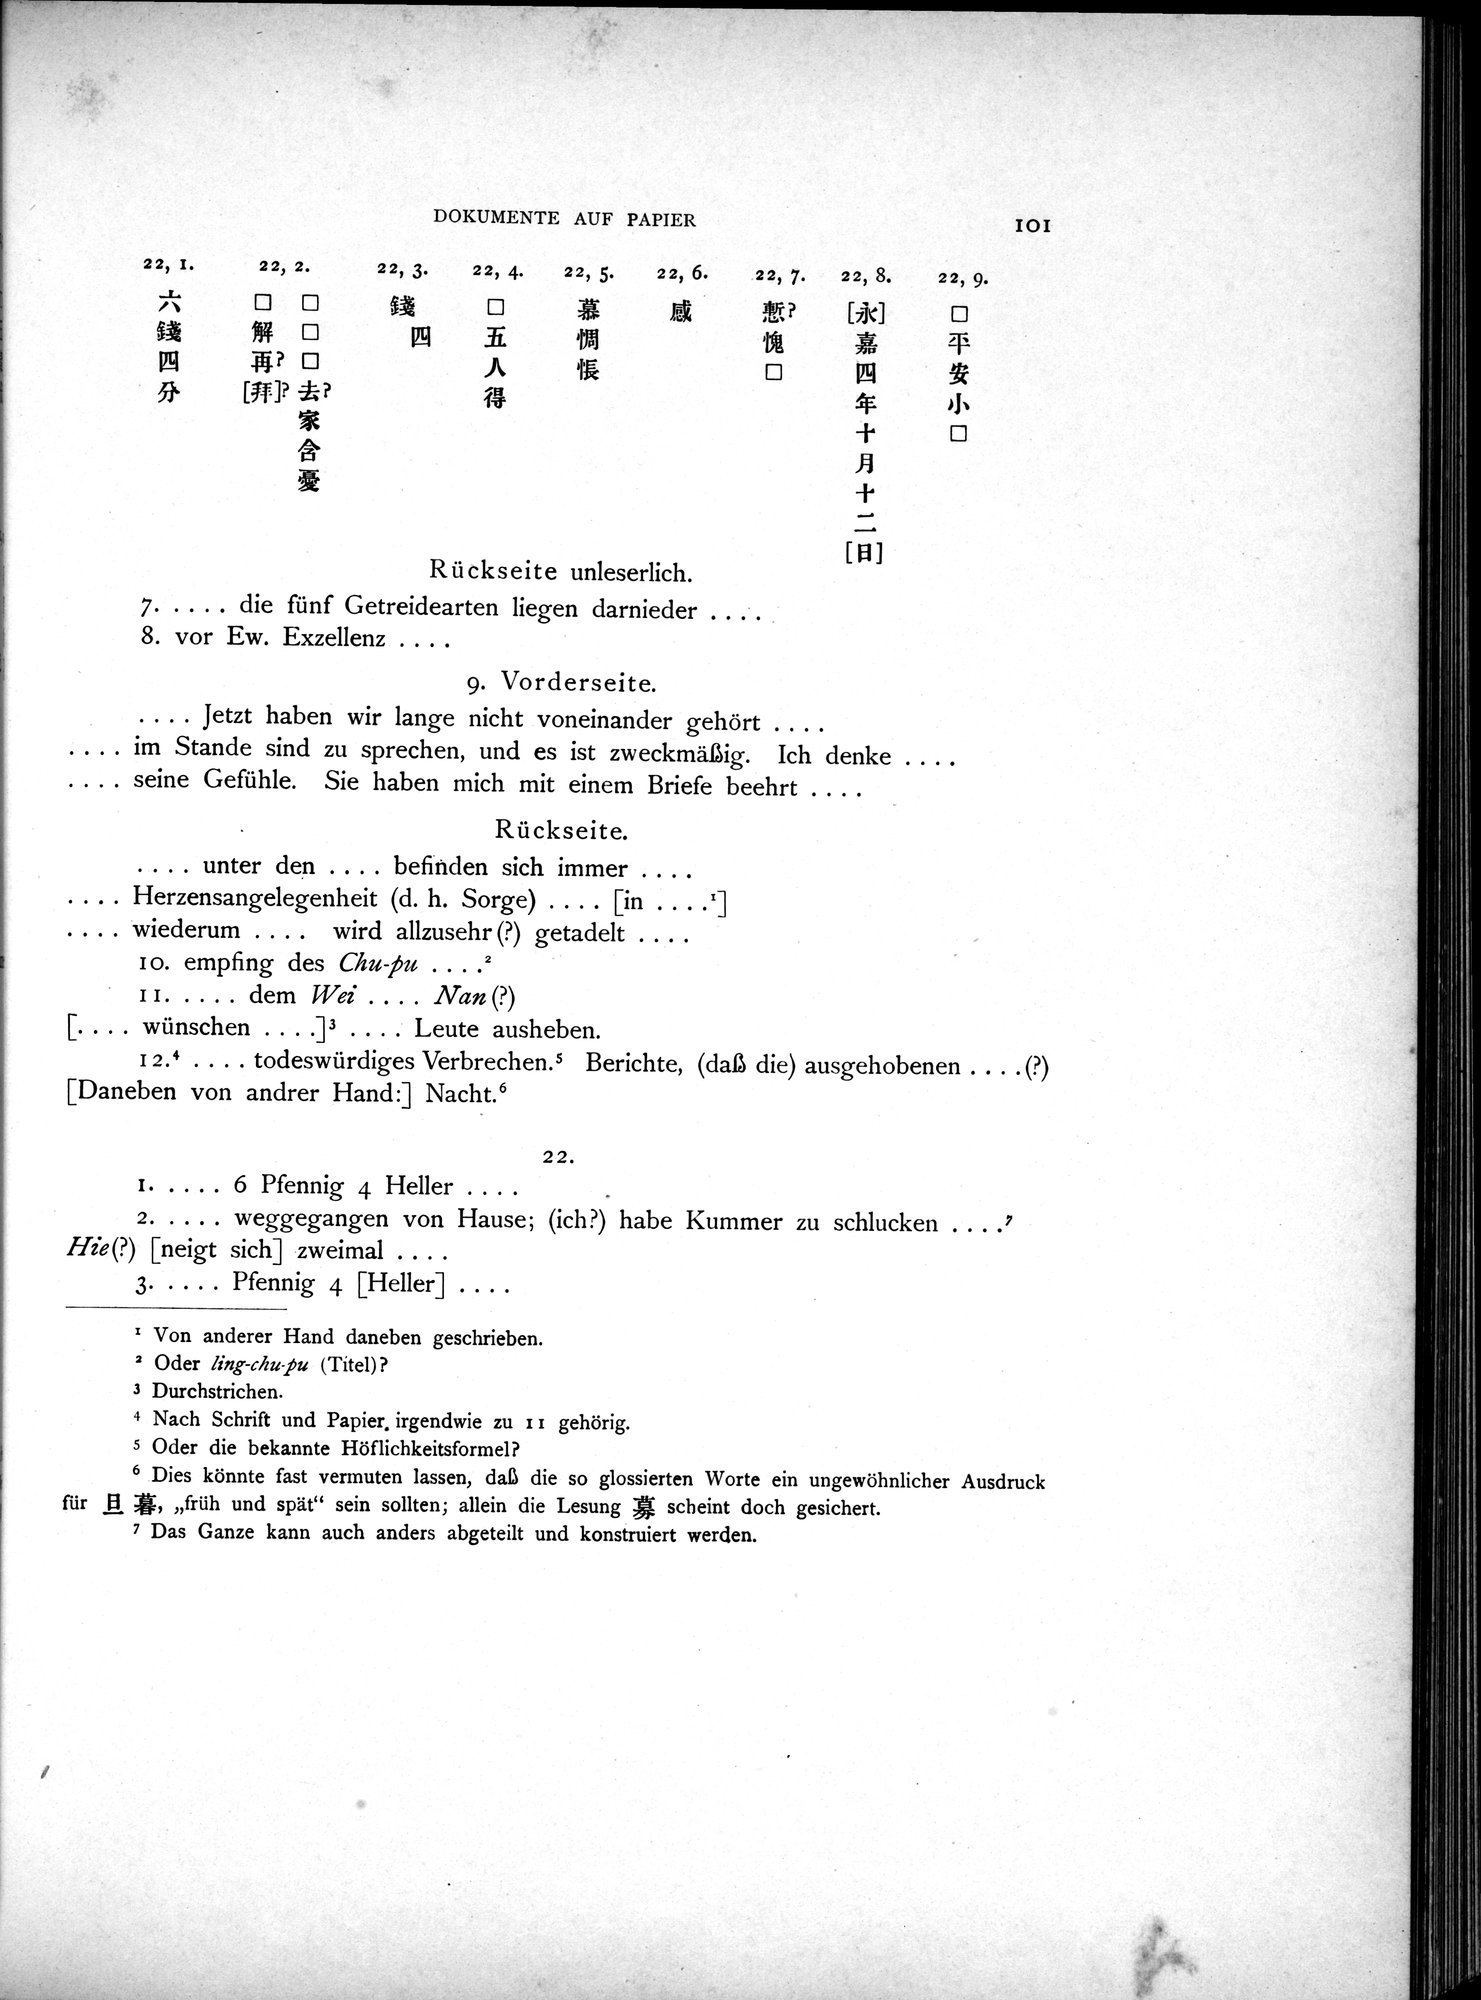 Die Chinesischen Handschriften- und sonstigen Kleinfunde Sven Hedins in Lou-lan : vol.1 / Page 125 (Grayscale High Resolution Image)